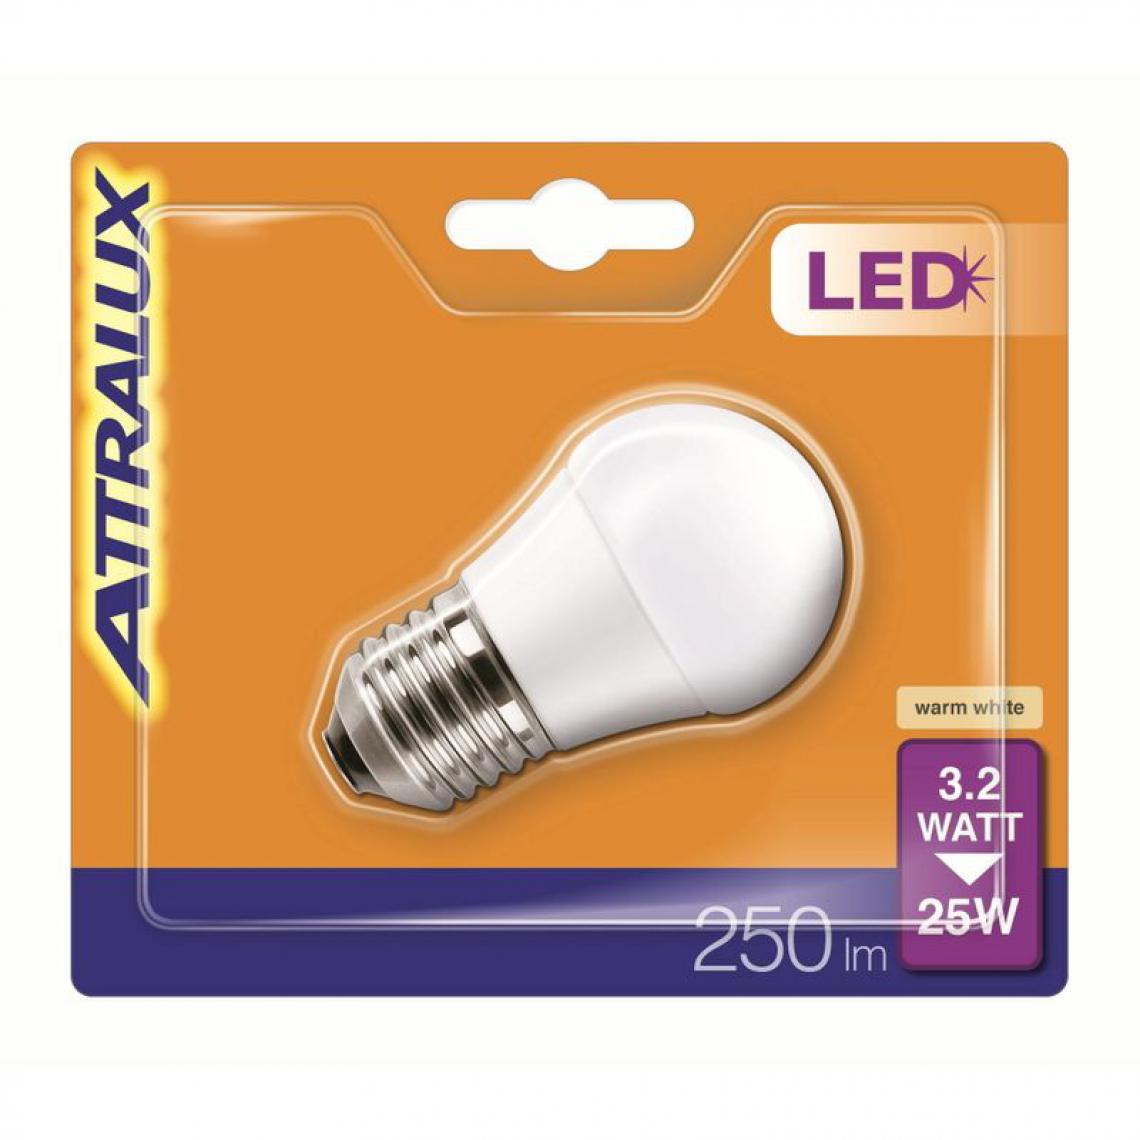 Philips - Ampoule LED 3,2W équiv 25W 250 lm E27 Blanc chaud - Ampoules LED